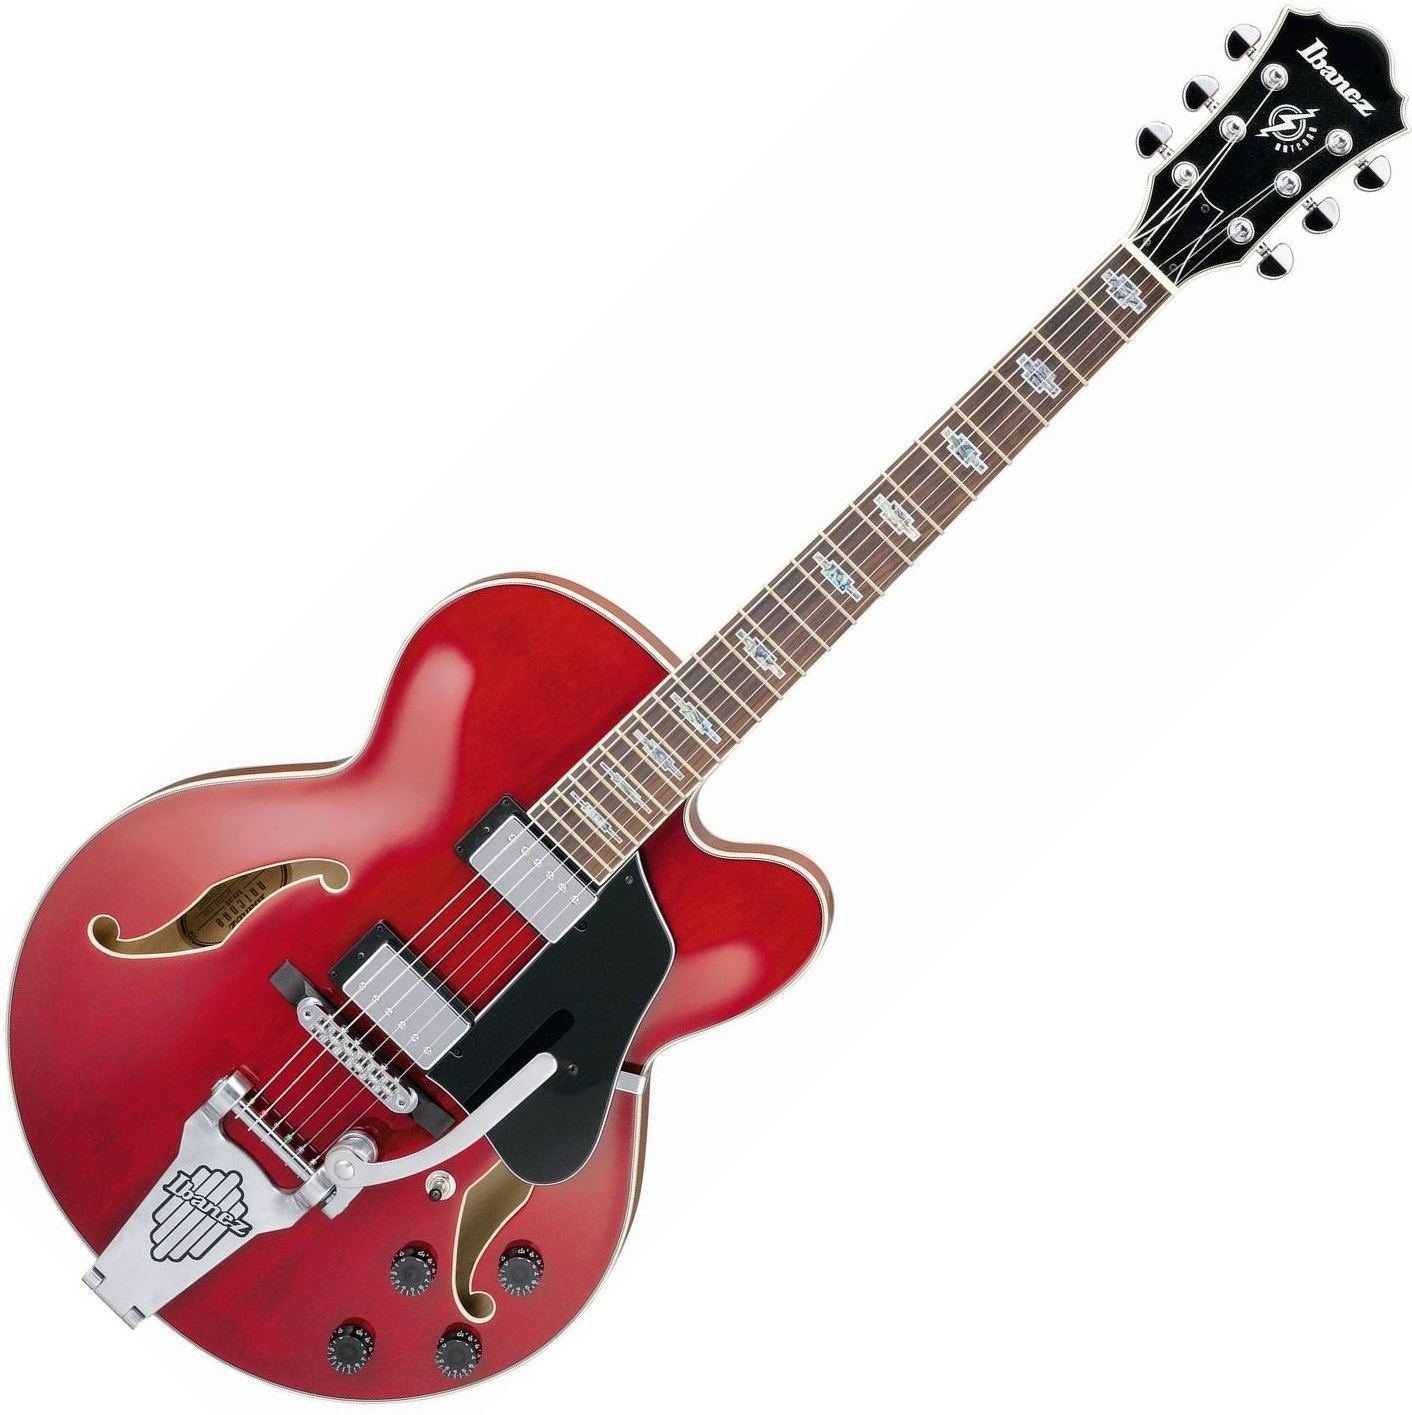 Halvakustisk gitarr Ibanez AFS 75T Transparent Red